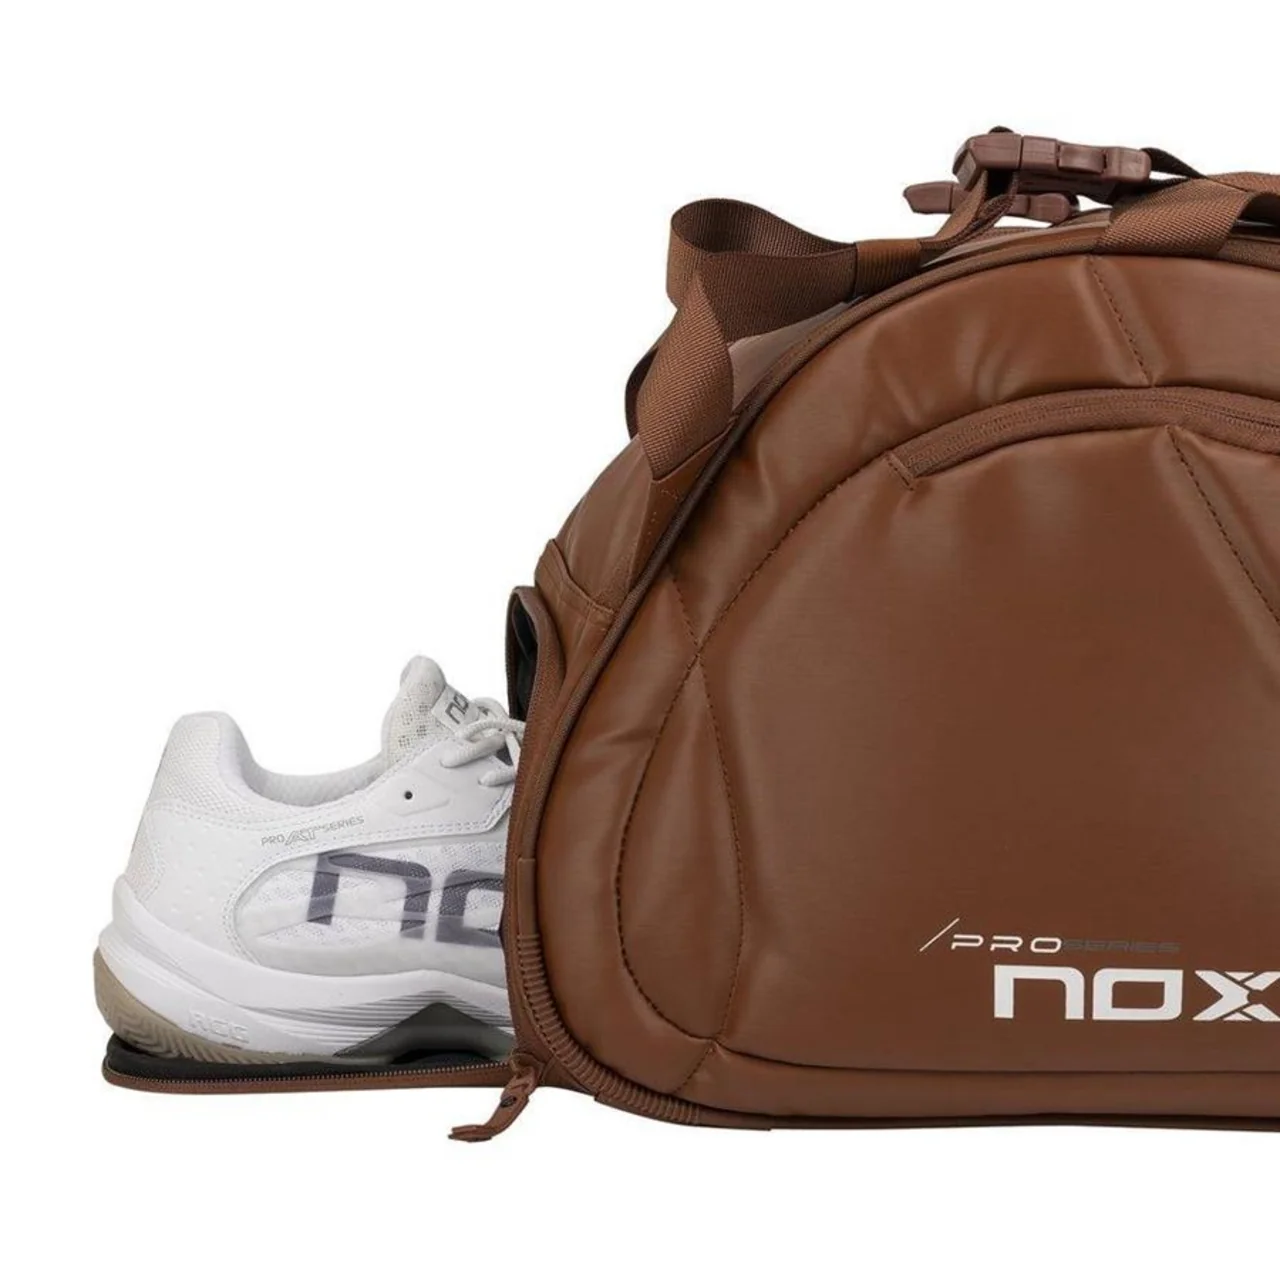 Nox Pro Series Padel Bag Camel Brown